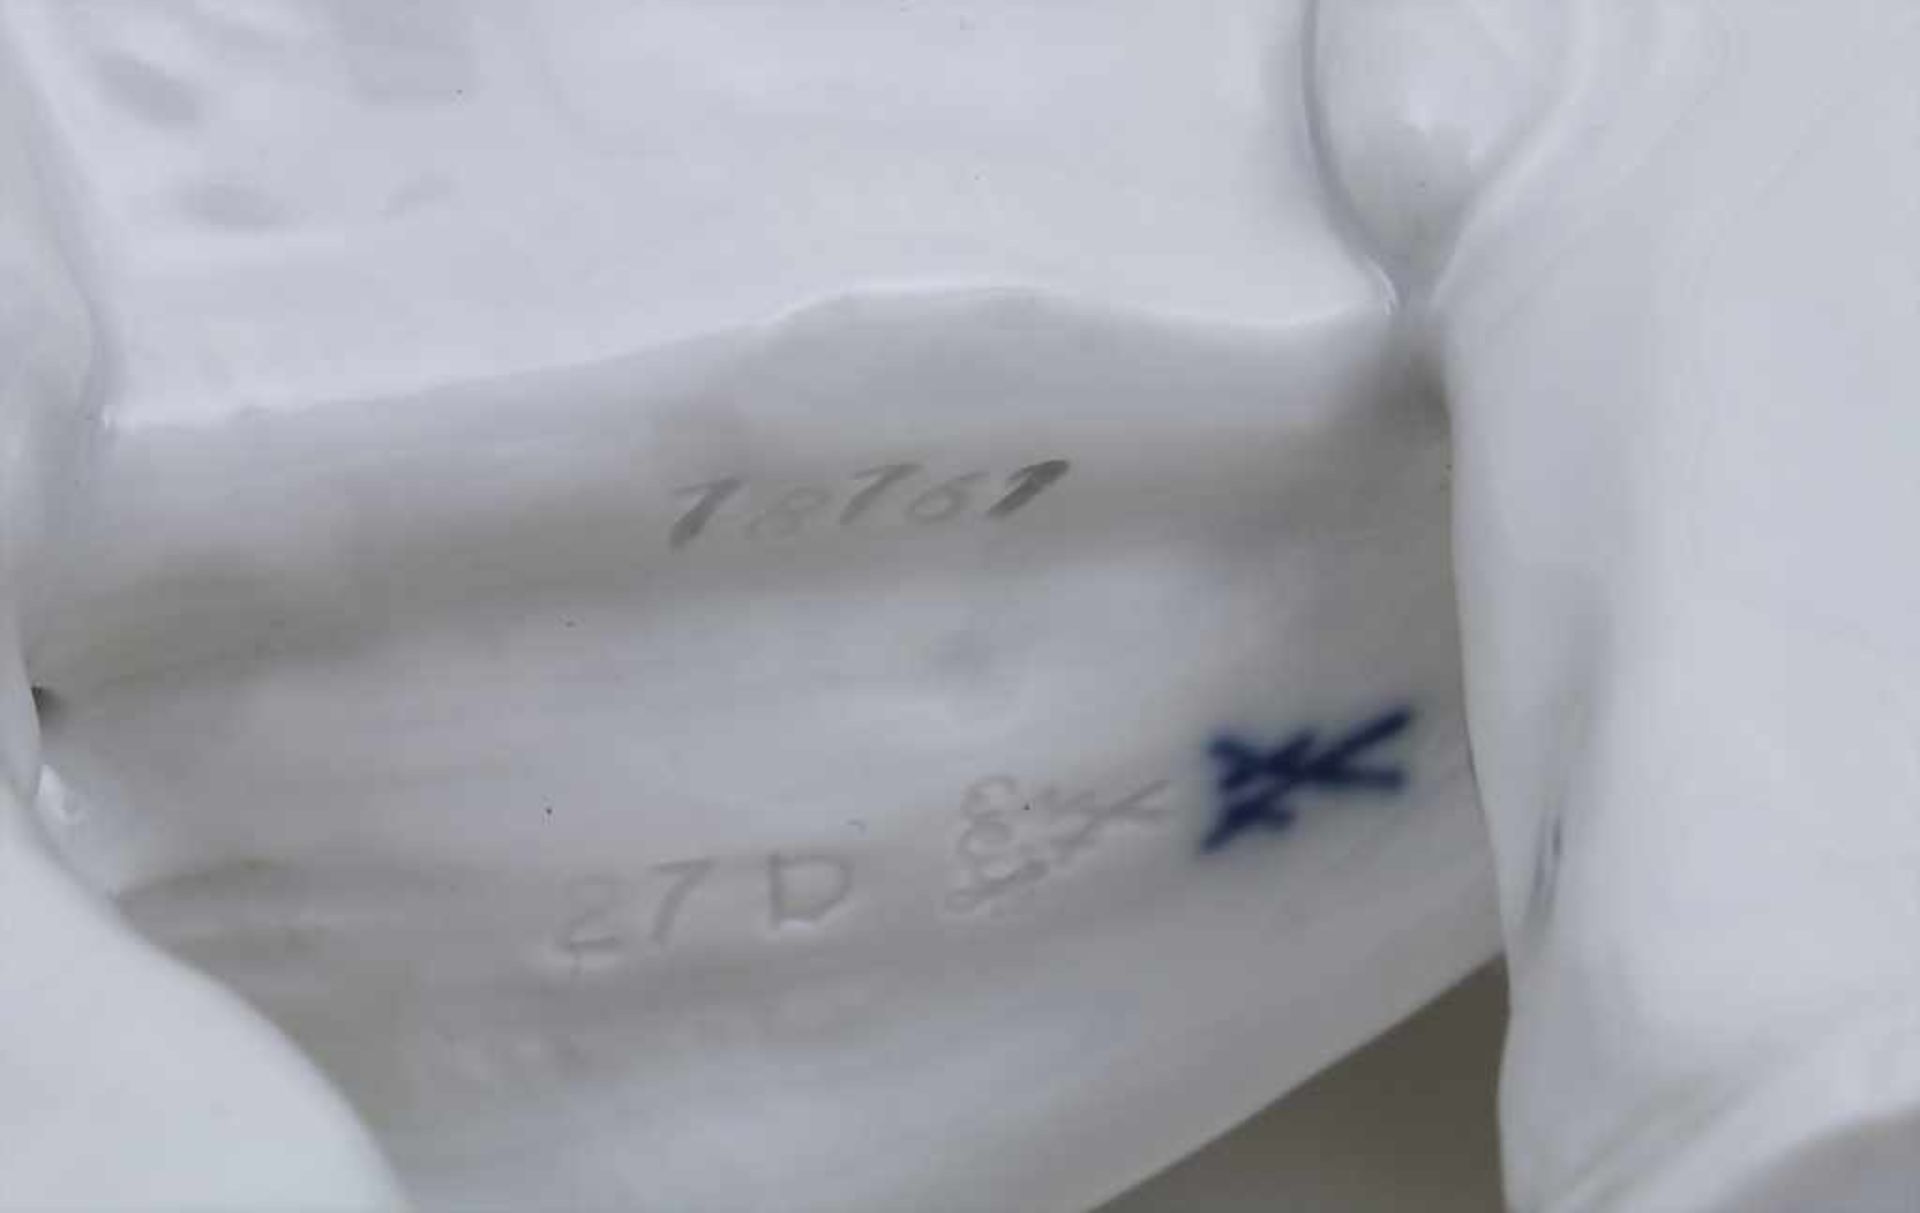 Elefant / A Porcelain Elephant, Meissen, Mitte 20. Jh. Material: Porzellan, weiß und glasiert,Marke: - Image 2 of 2